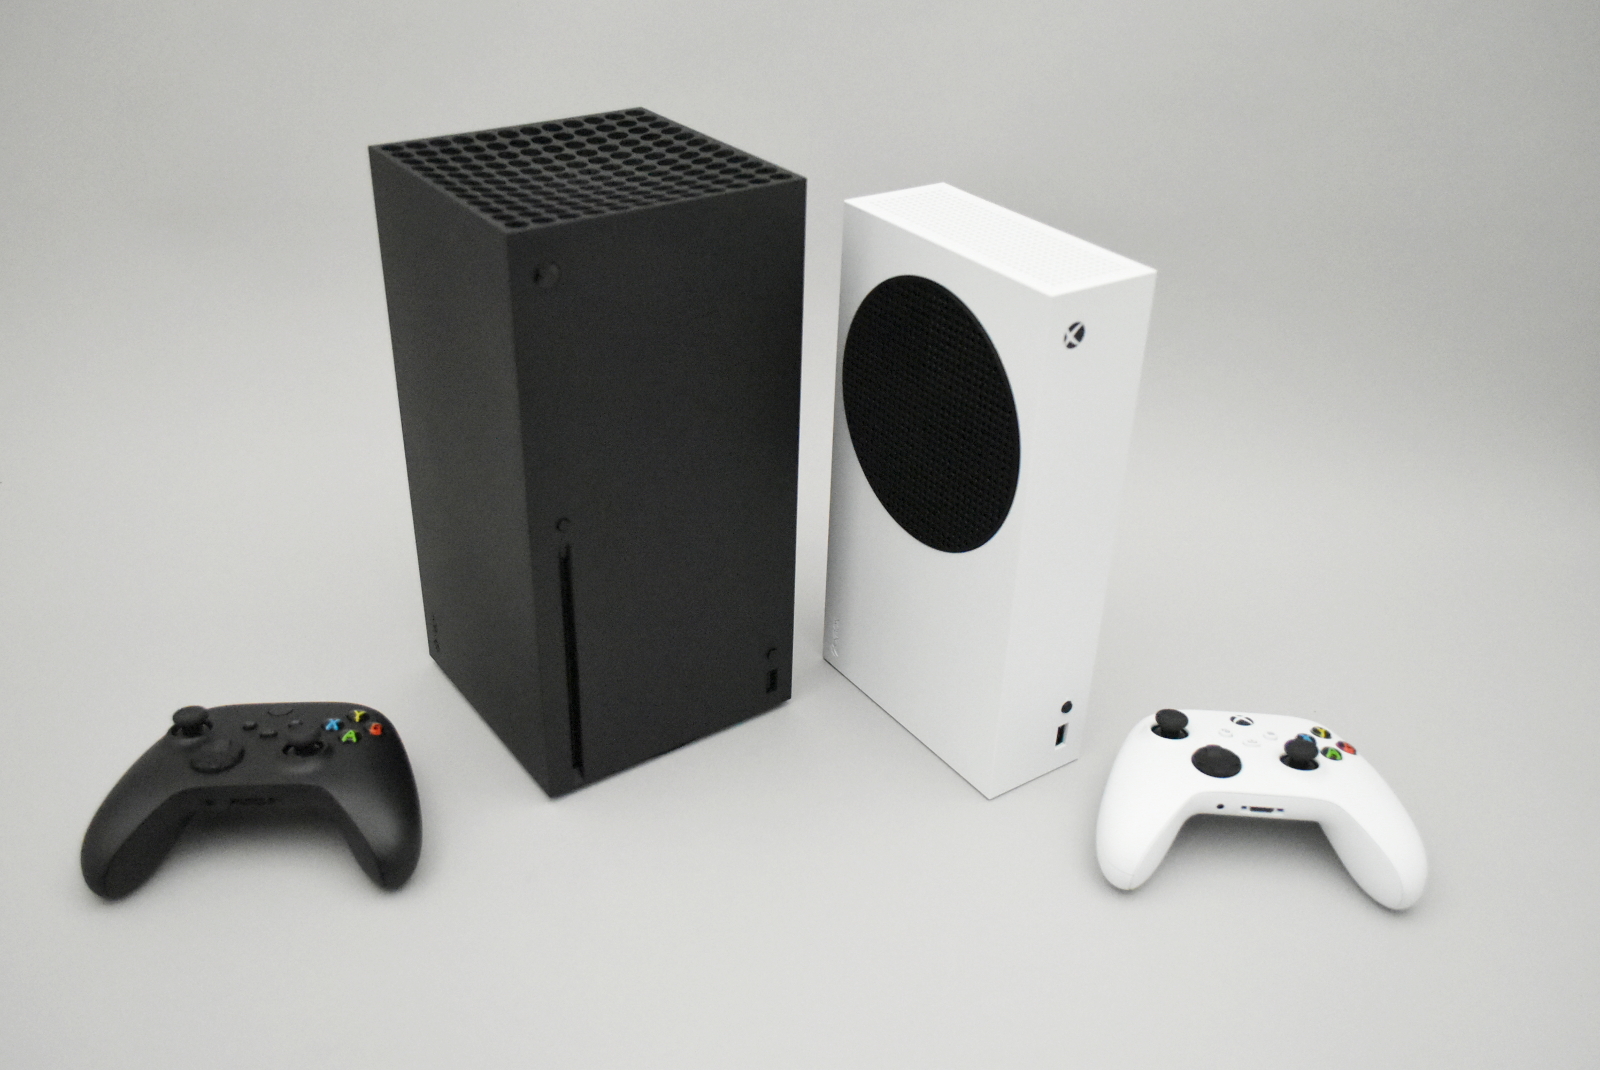 「Xbox Series X」と「Xbox Series S」を開封してみた。本体デザインと同様に収納方法もシンプルでスッキリ